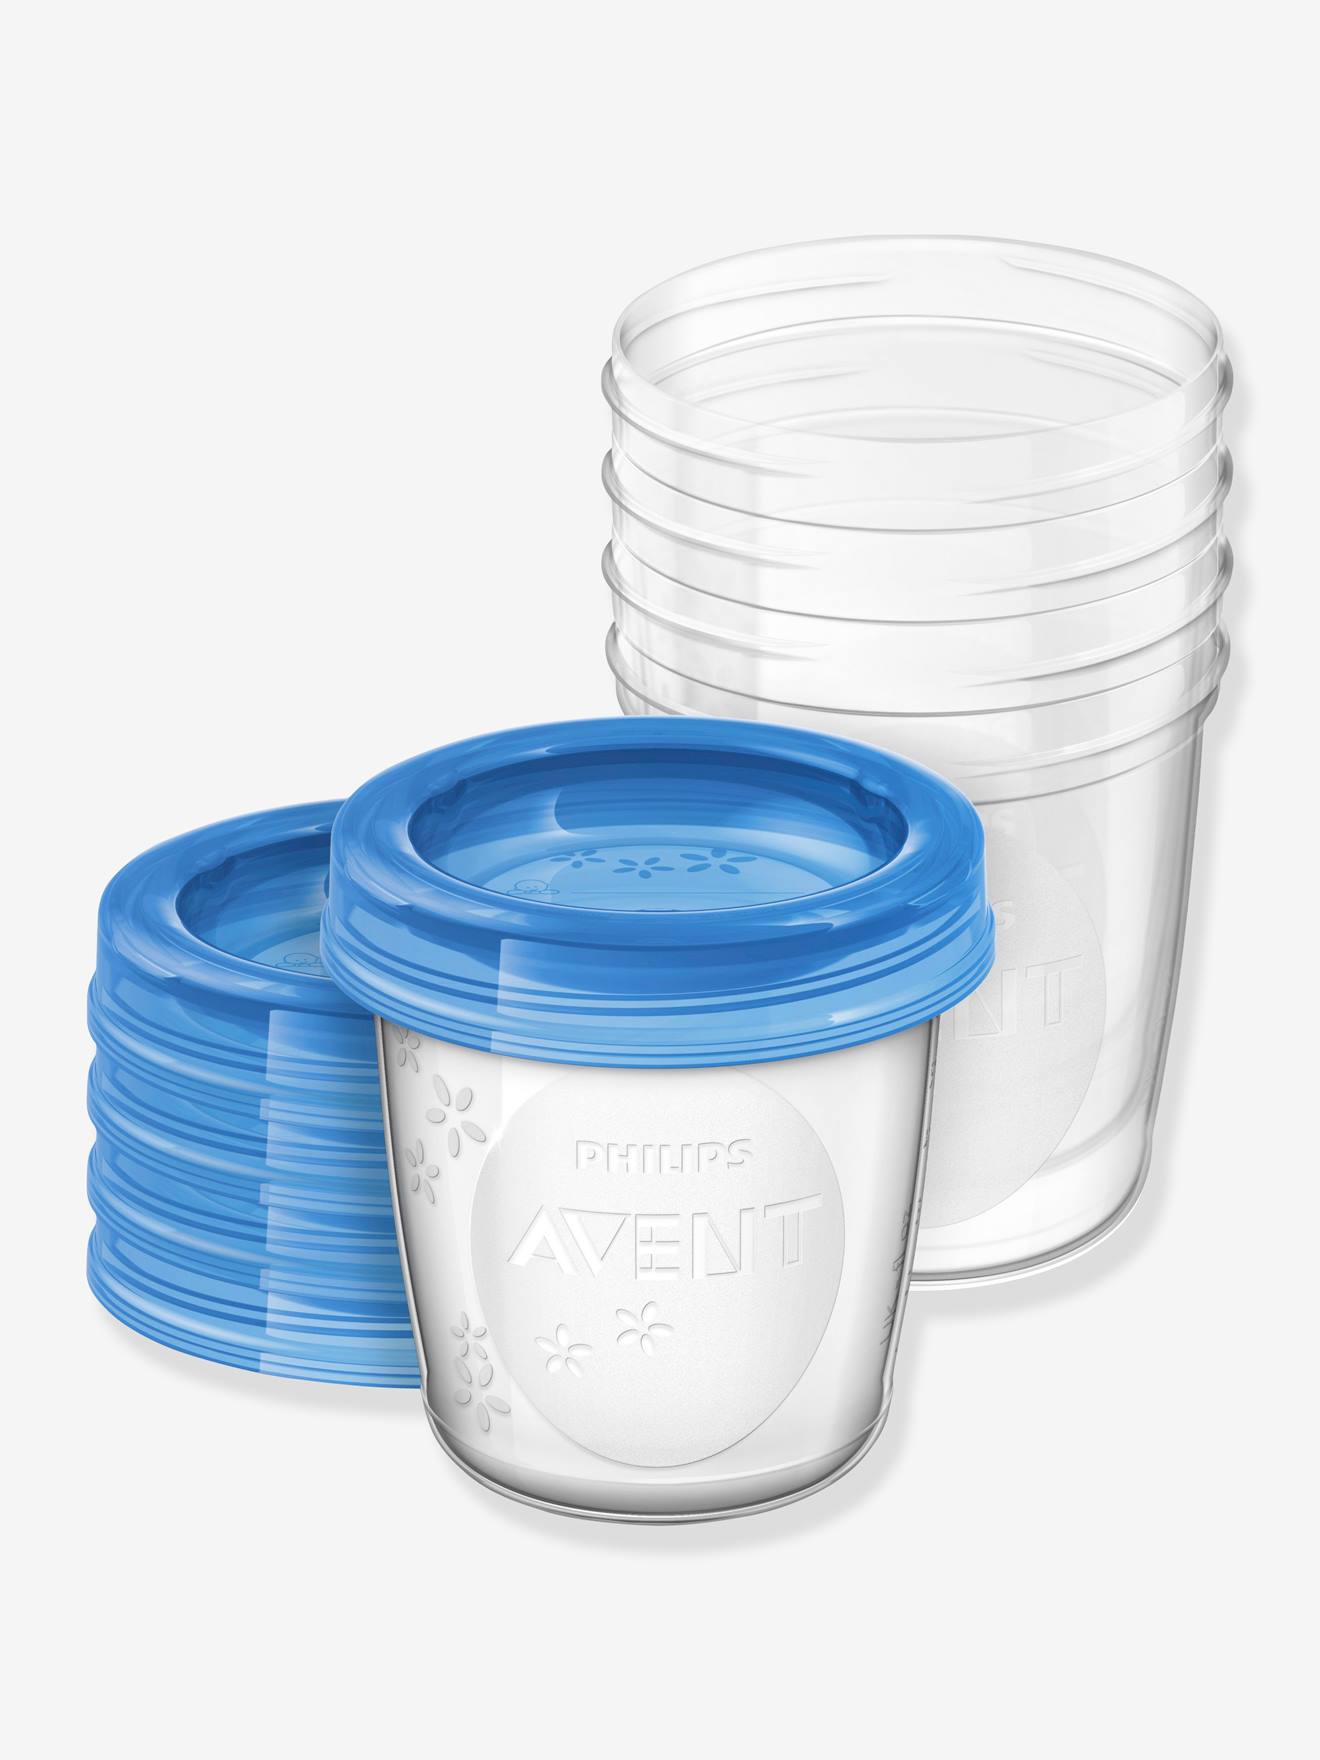 Pot de poudre de lait portable 5 couches pour bébé (5 couches bleu)